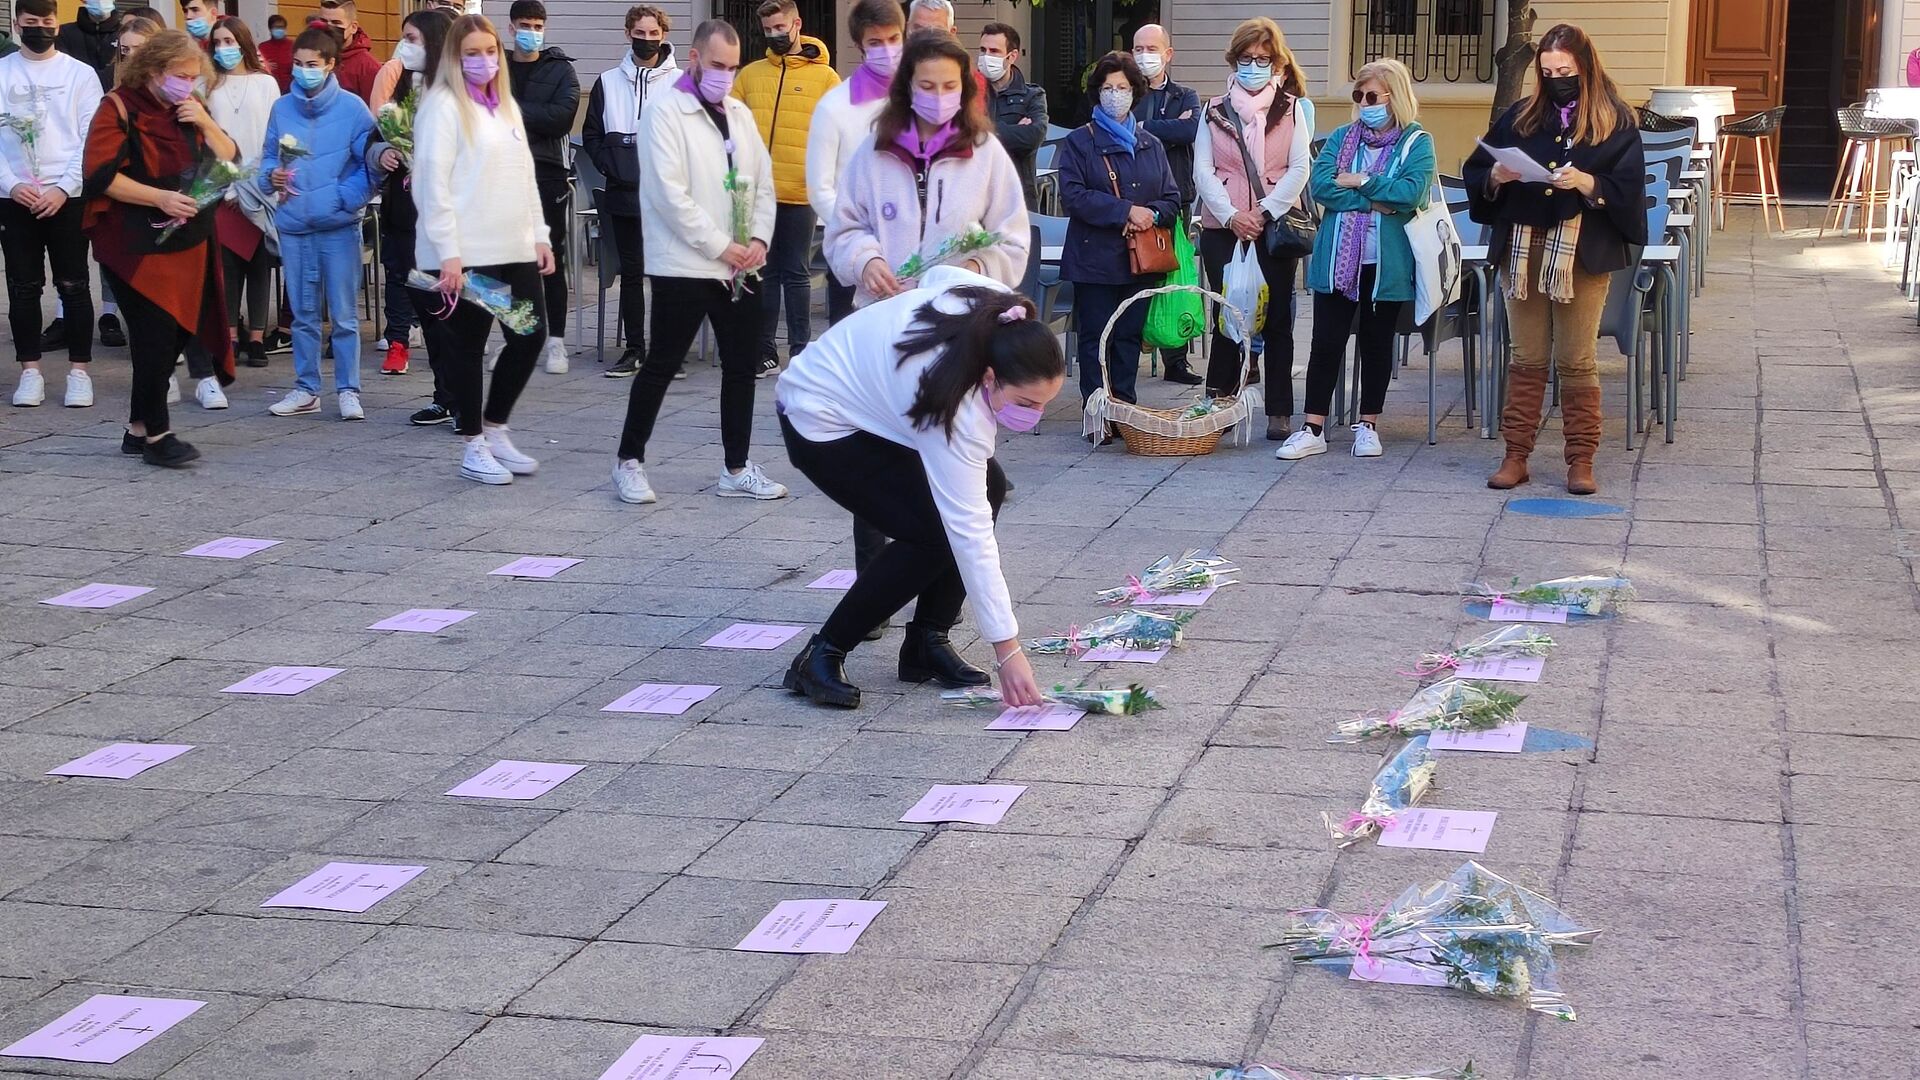 Fotos: las im&aacute;genes de la ma&ntilde;ana del D&iacute;a Internacional por la Eliminaci&oacute;n de la Violencia Contra las Mujeres en Granada